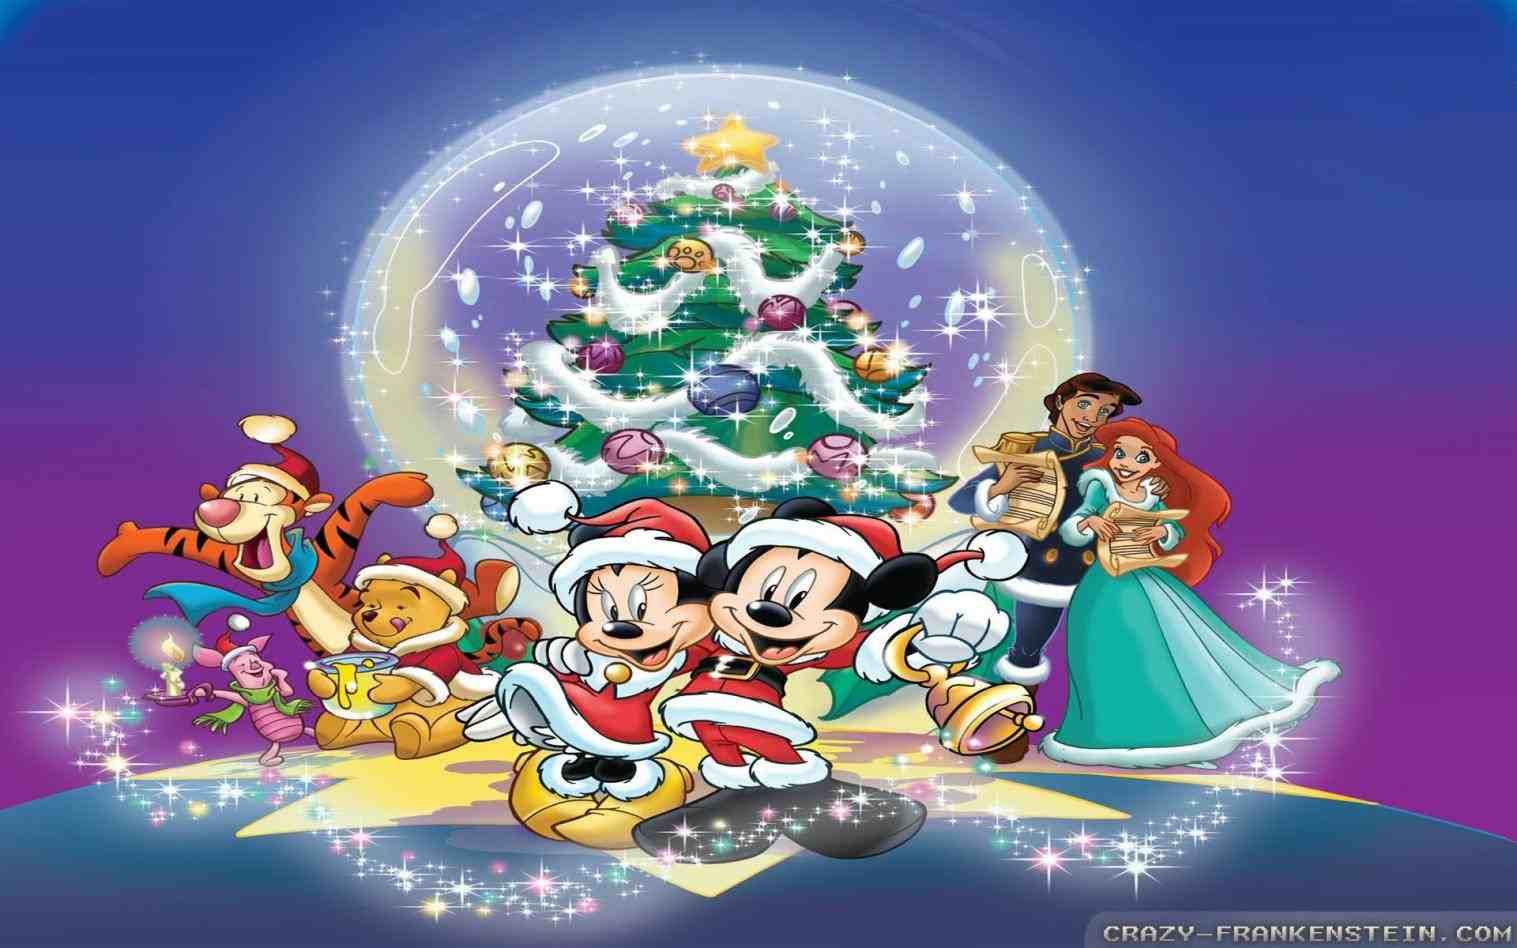 Disney christmas, Disney characters christmas, Christmas cartoons